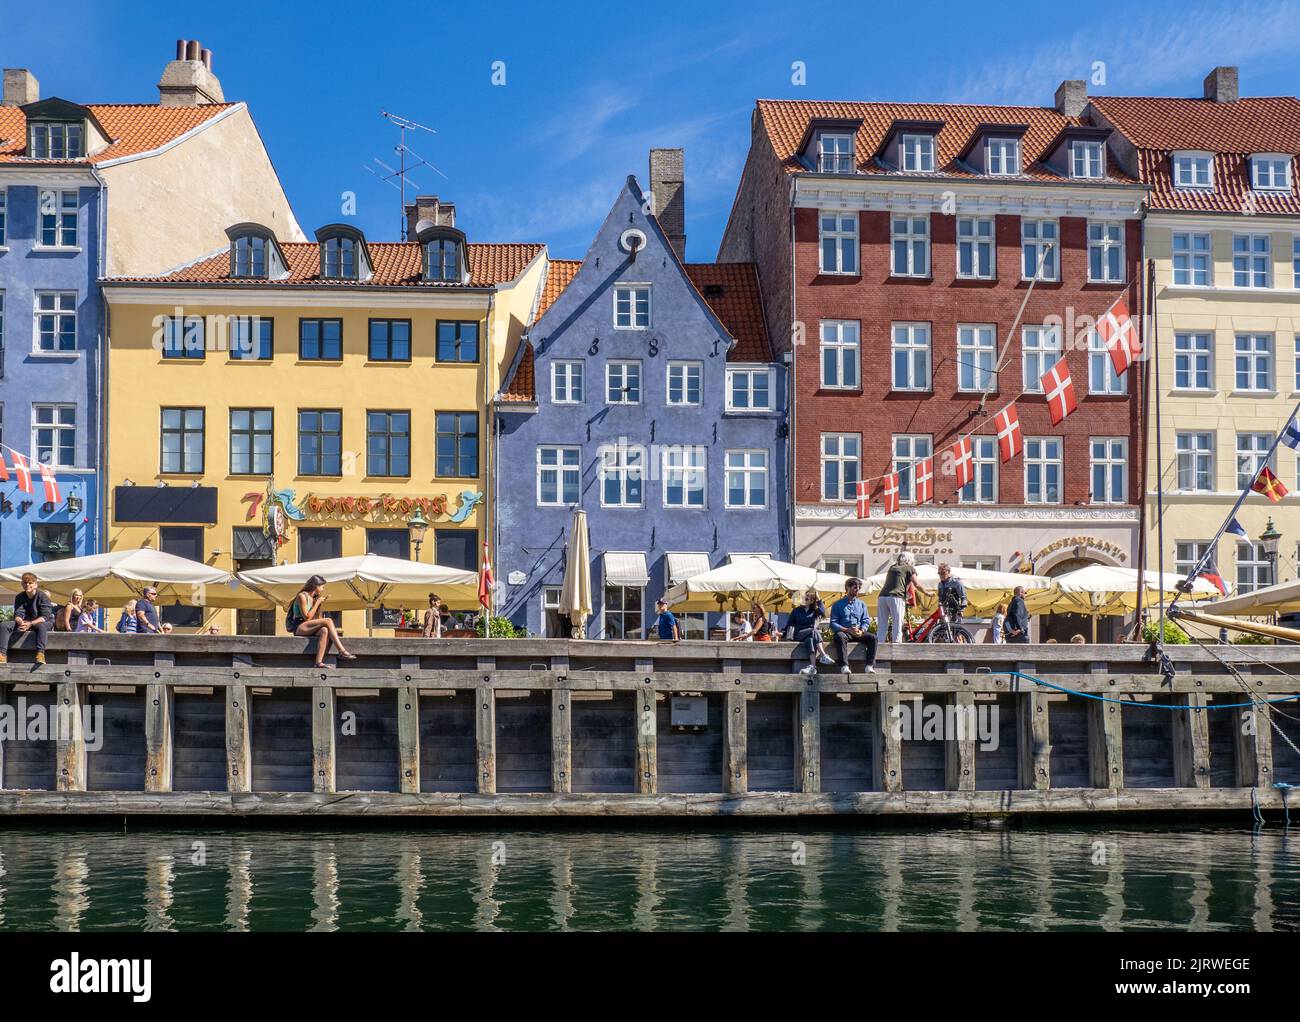 Relajándose bajo el sol en el popular destino turístico de Nyhavn Un canal lleno de coloridos cafés y bares de casas de 17th C - Copenhague, Dinamarca Foto de stock